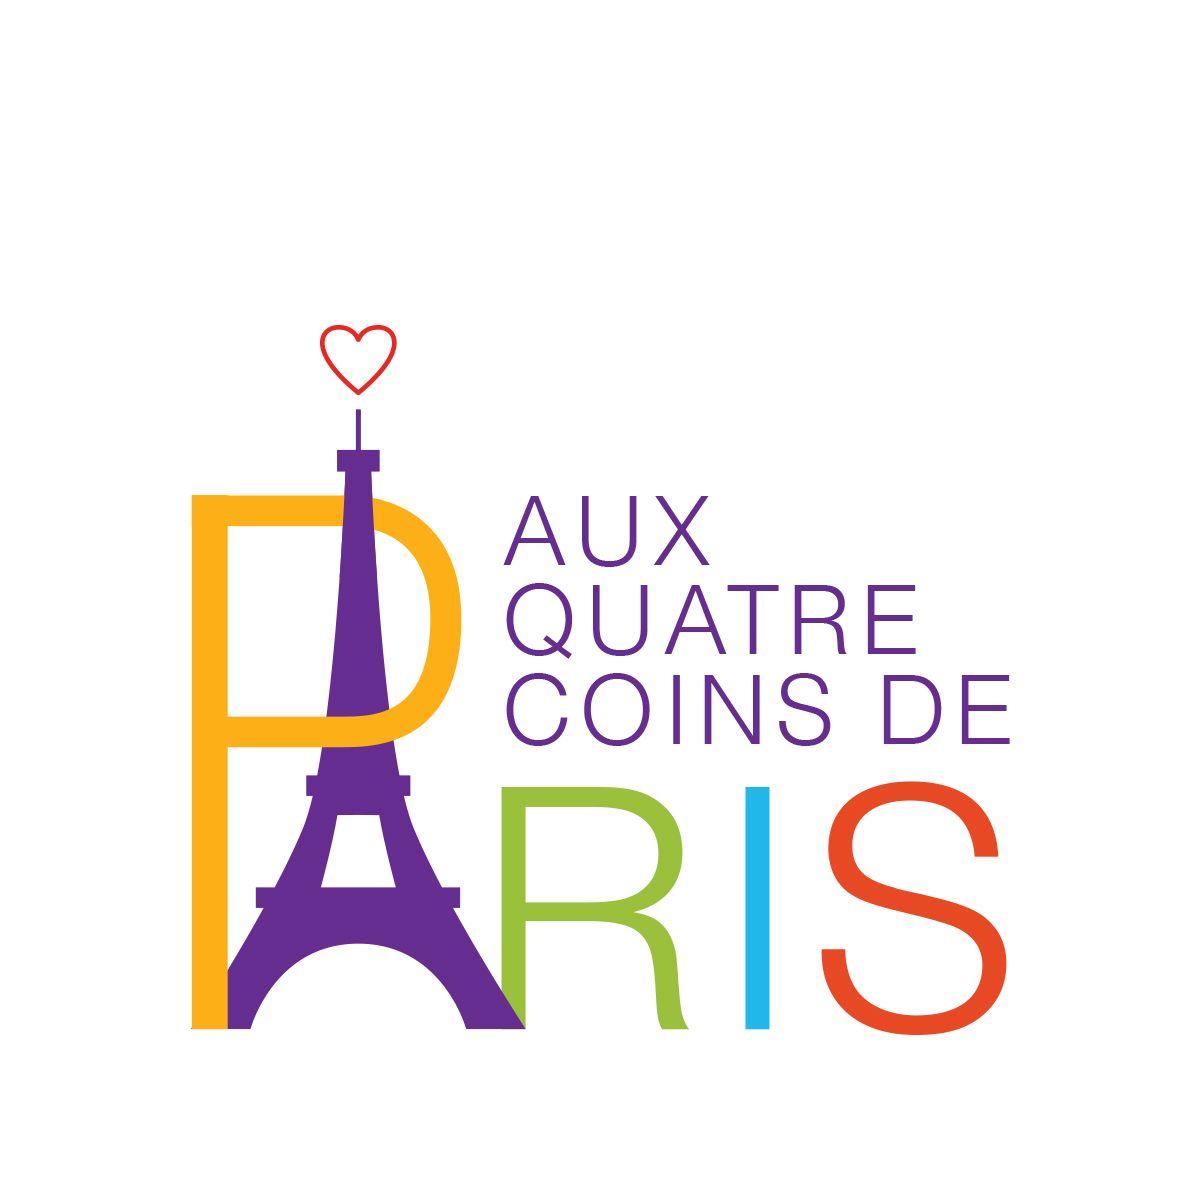 Paris Logo - AUX Paris logo